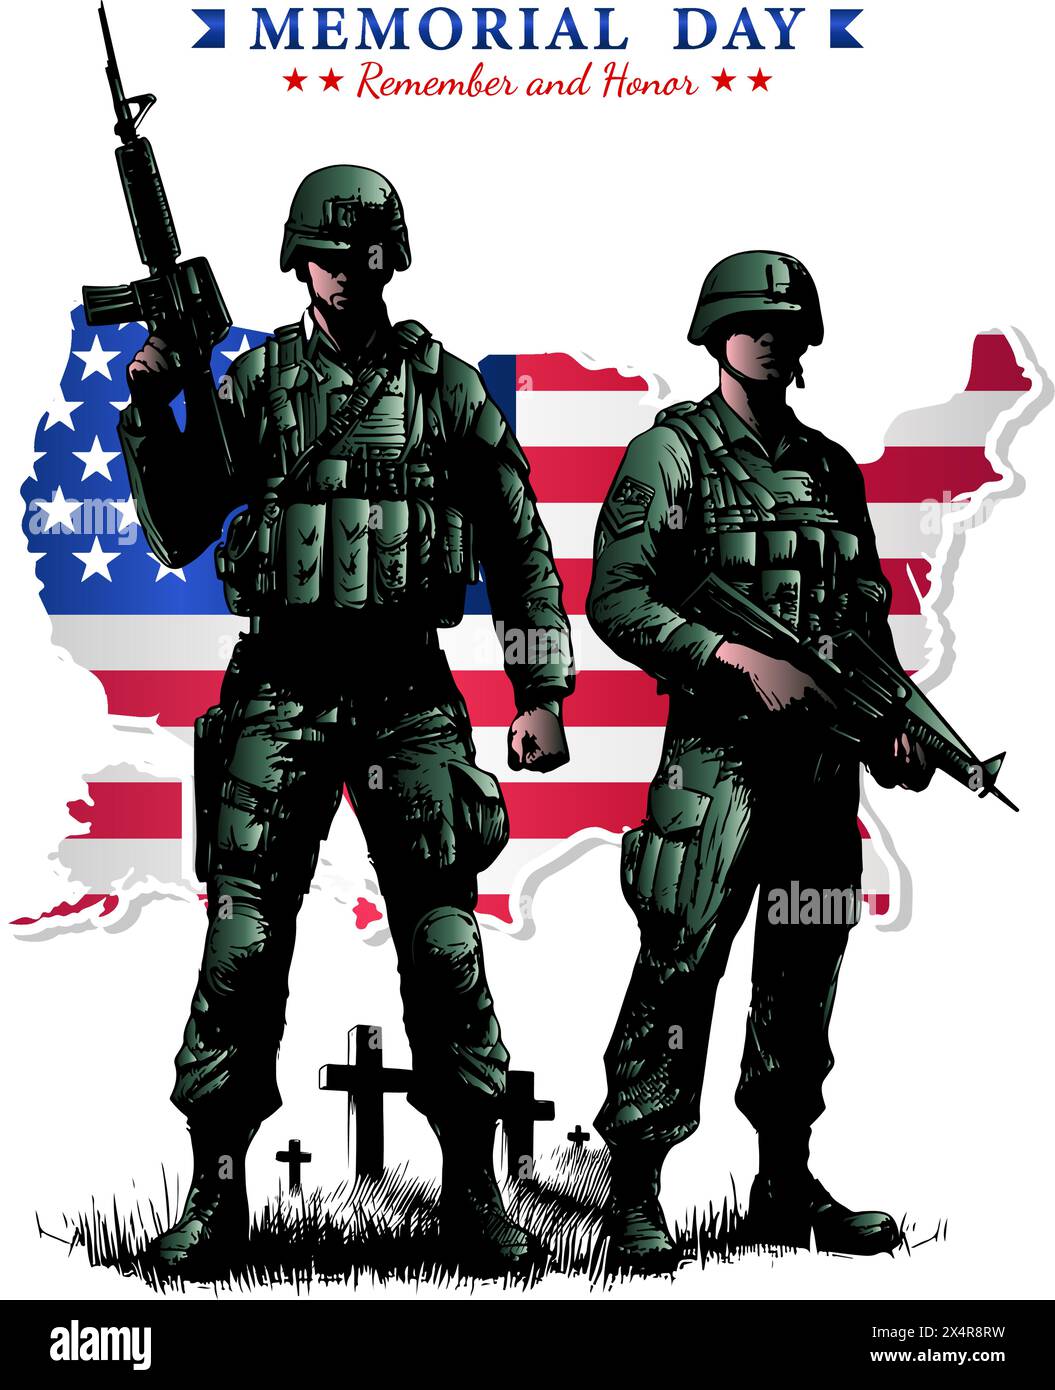 Memorial Day, Unabhängigkeitstag oder Patriot Day Konzept, zwei Soldaten bei Begräbnis mit Grabsteinen und US-Flagge Illustration Stock Vektor